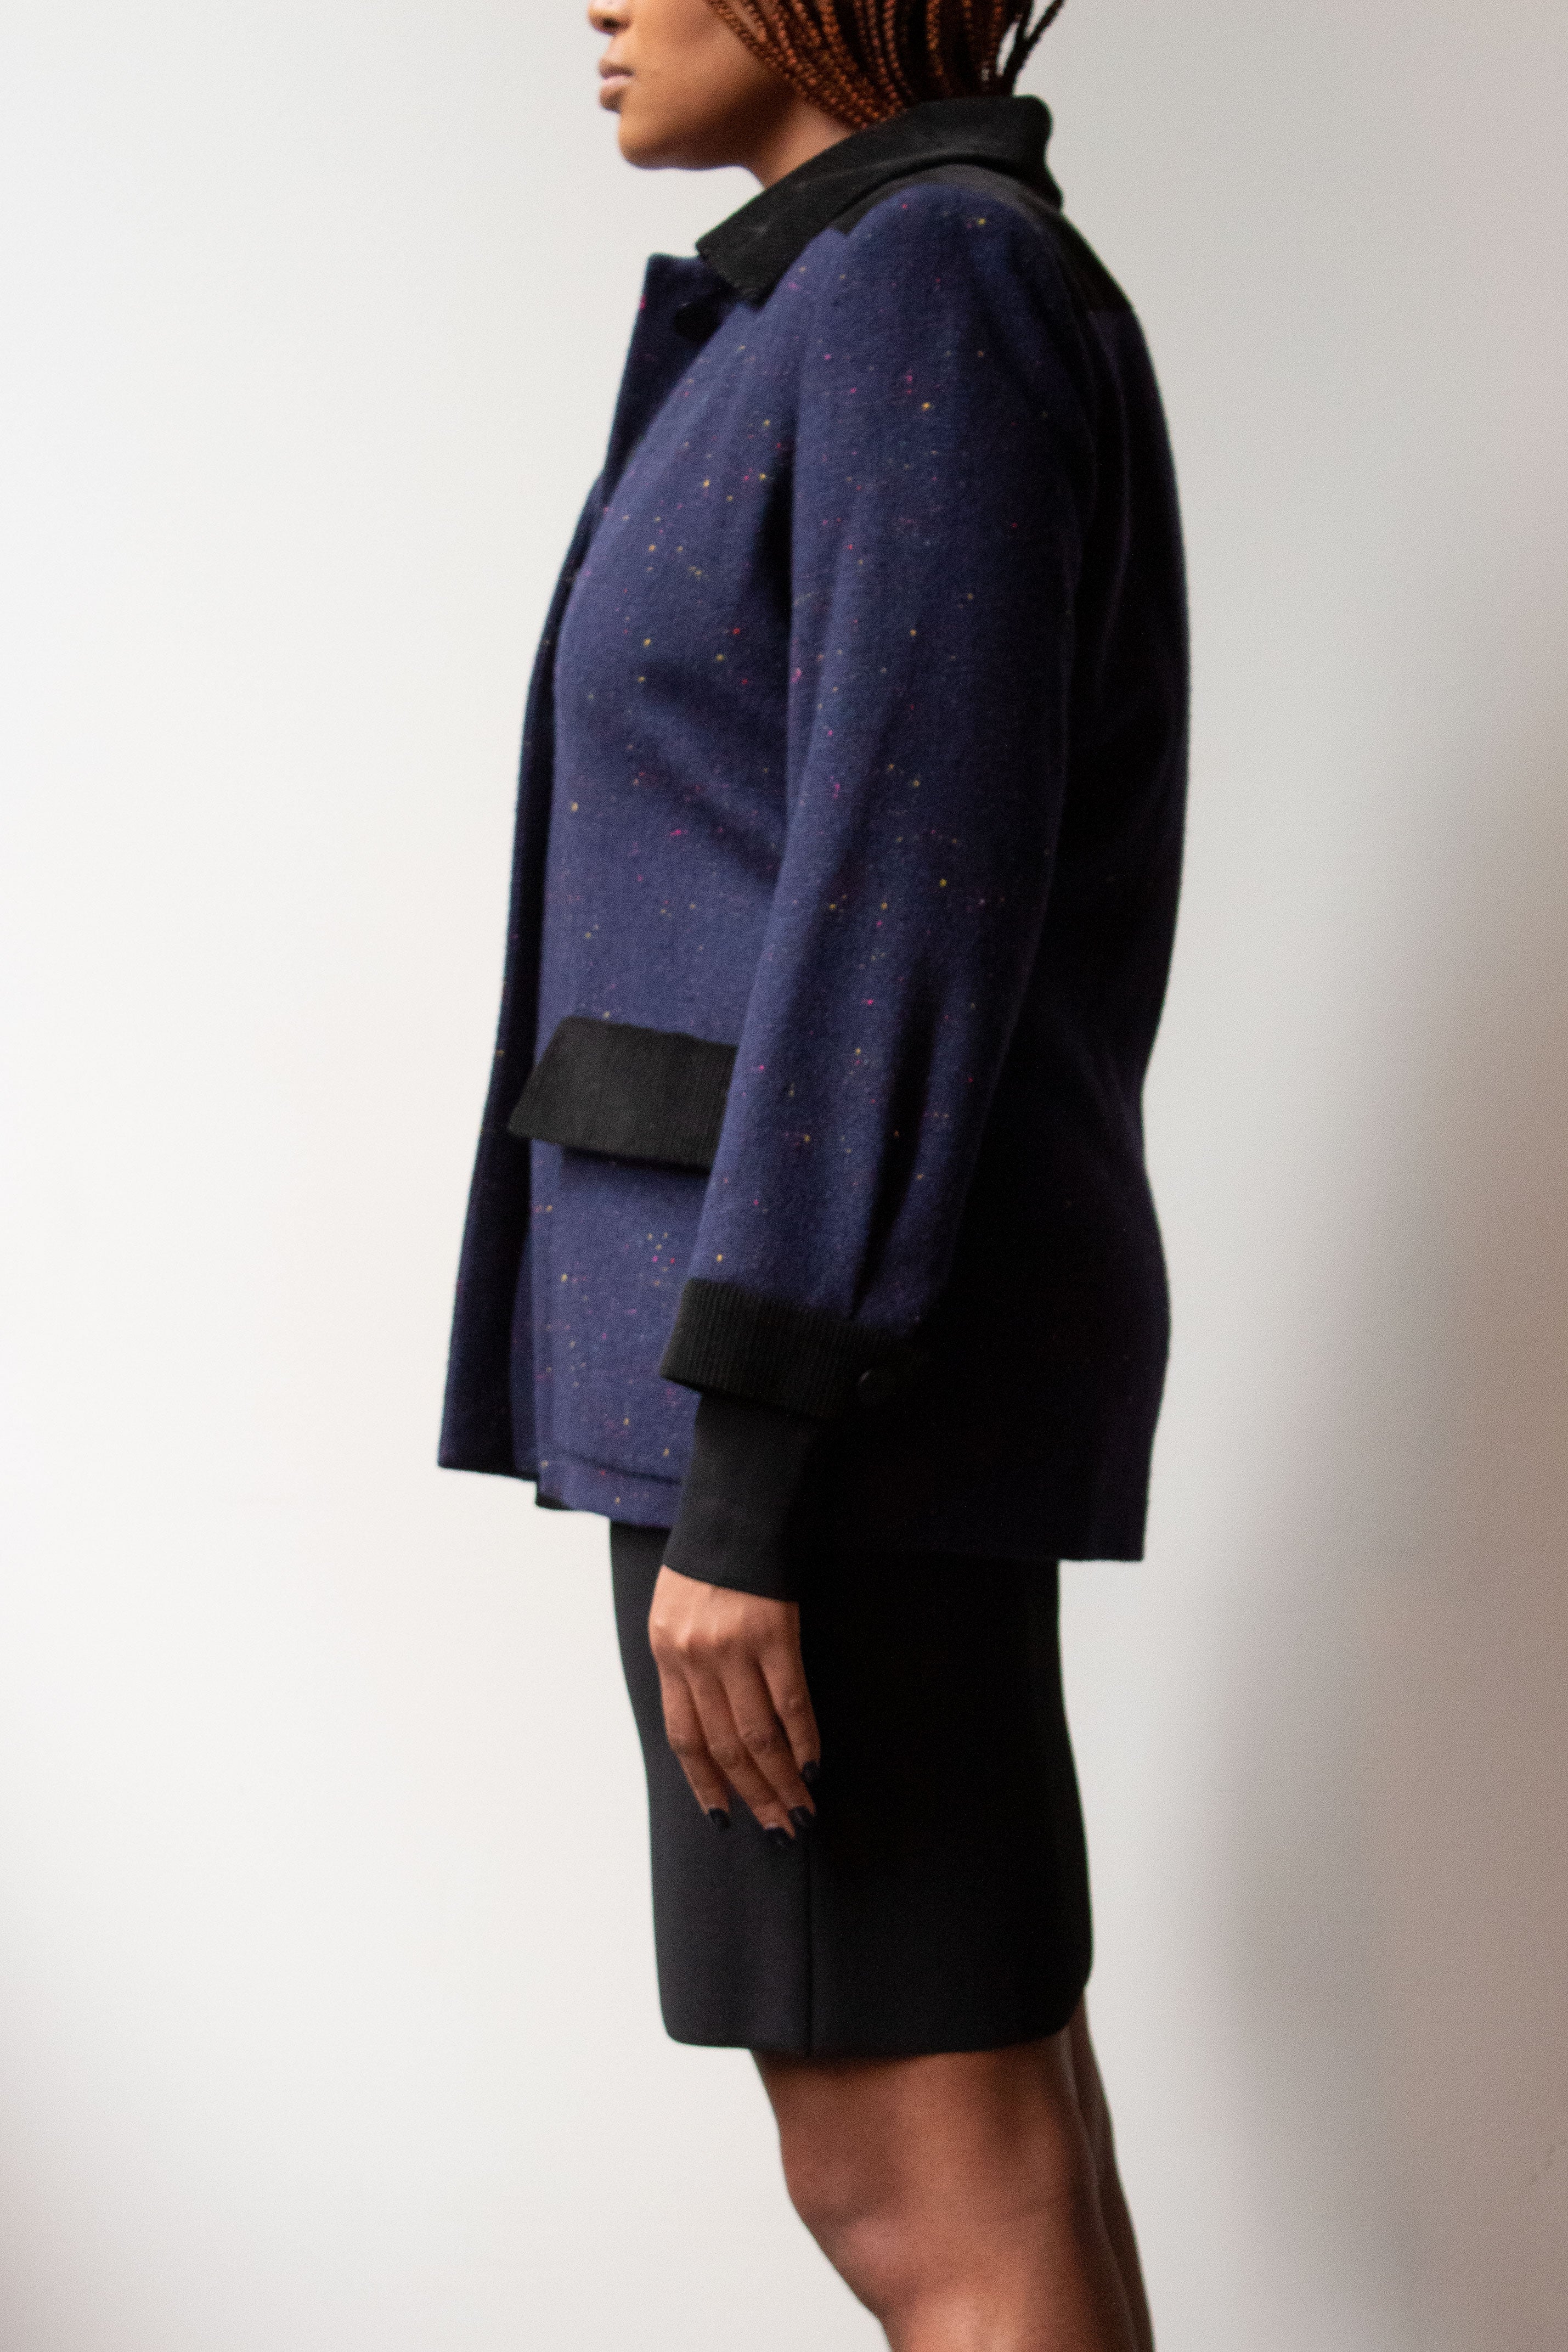 Yves Saint Laurent rainbow tweed jacket